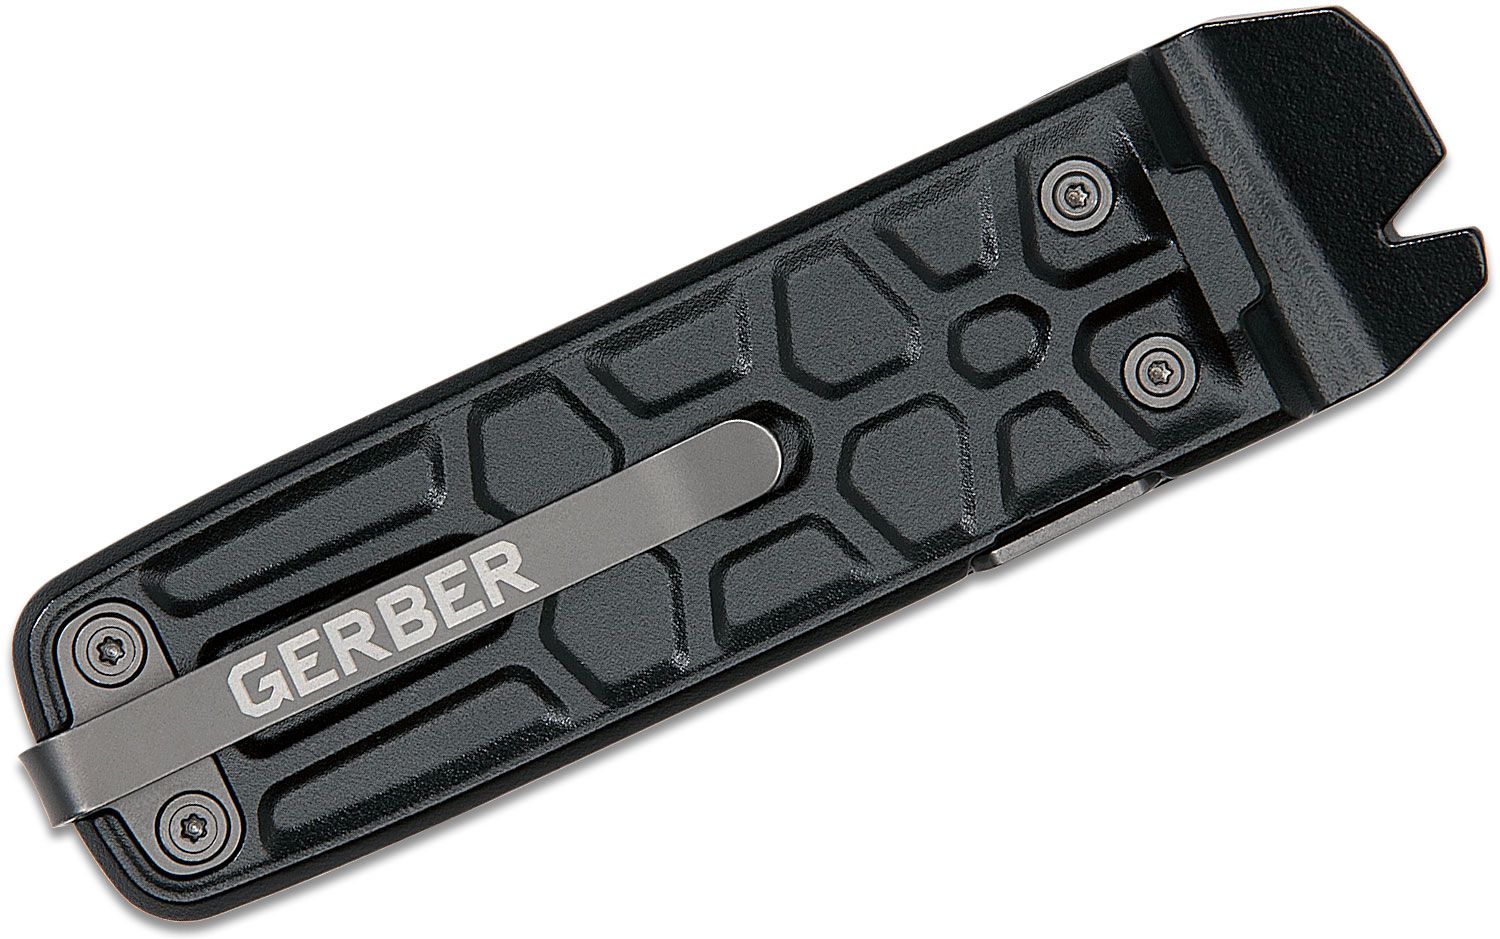 Gerber Multi - Tool Lockdown Slim Pry Black 7 Tools Multi-Purpose